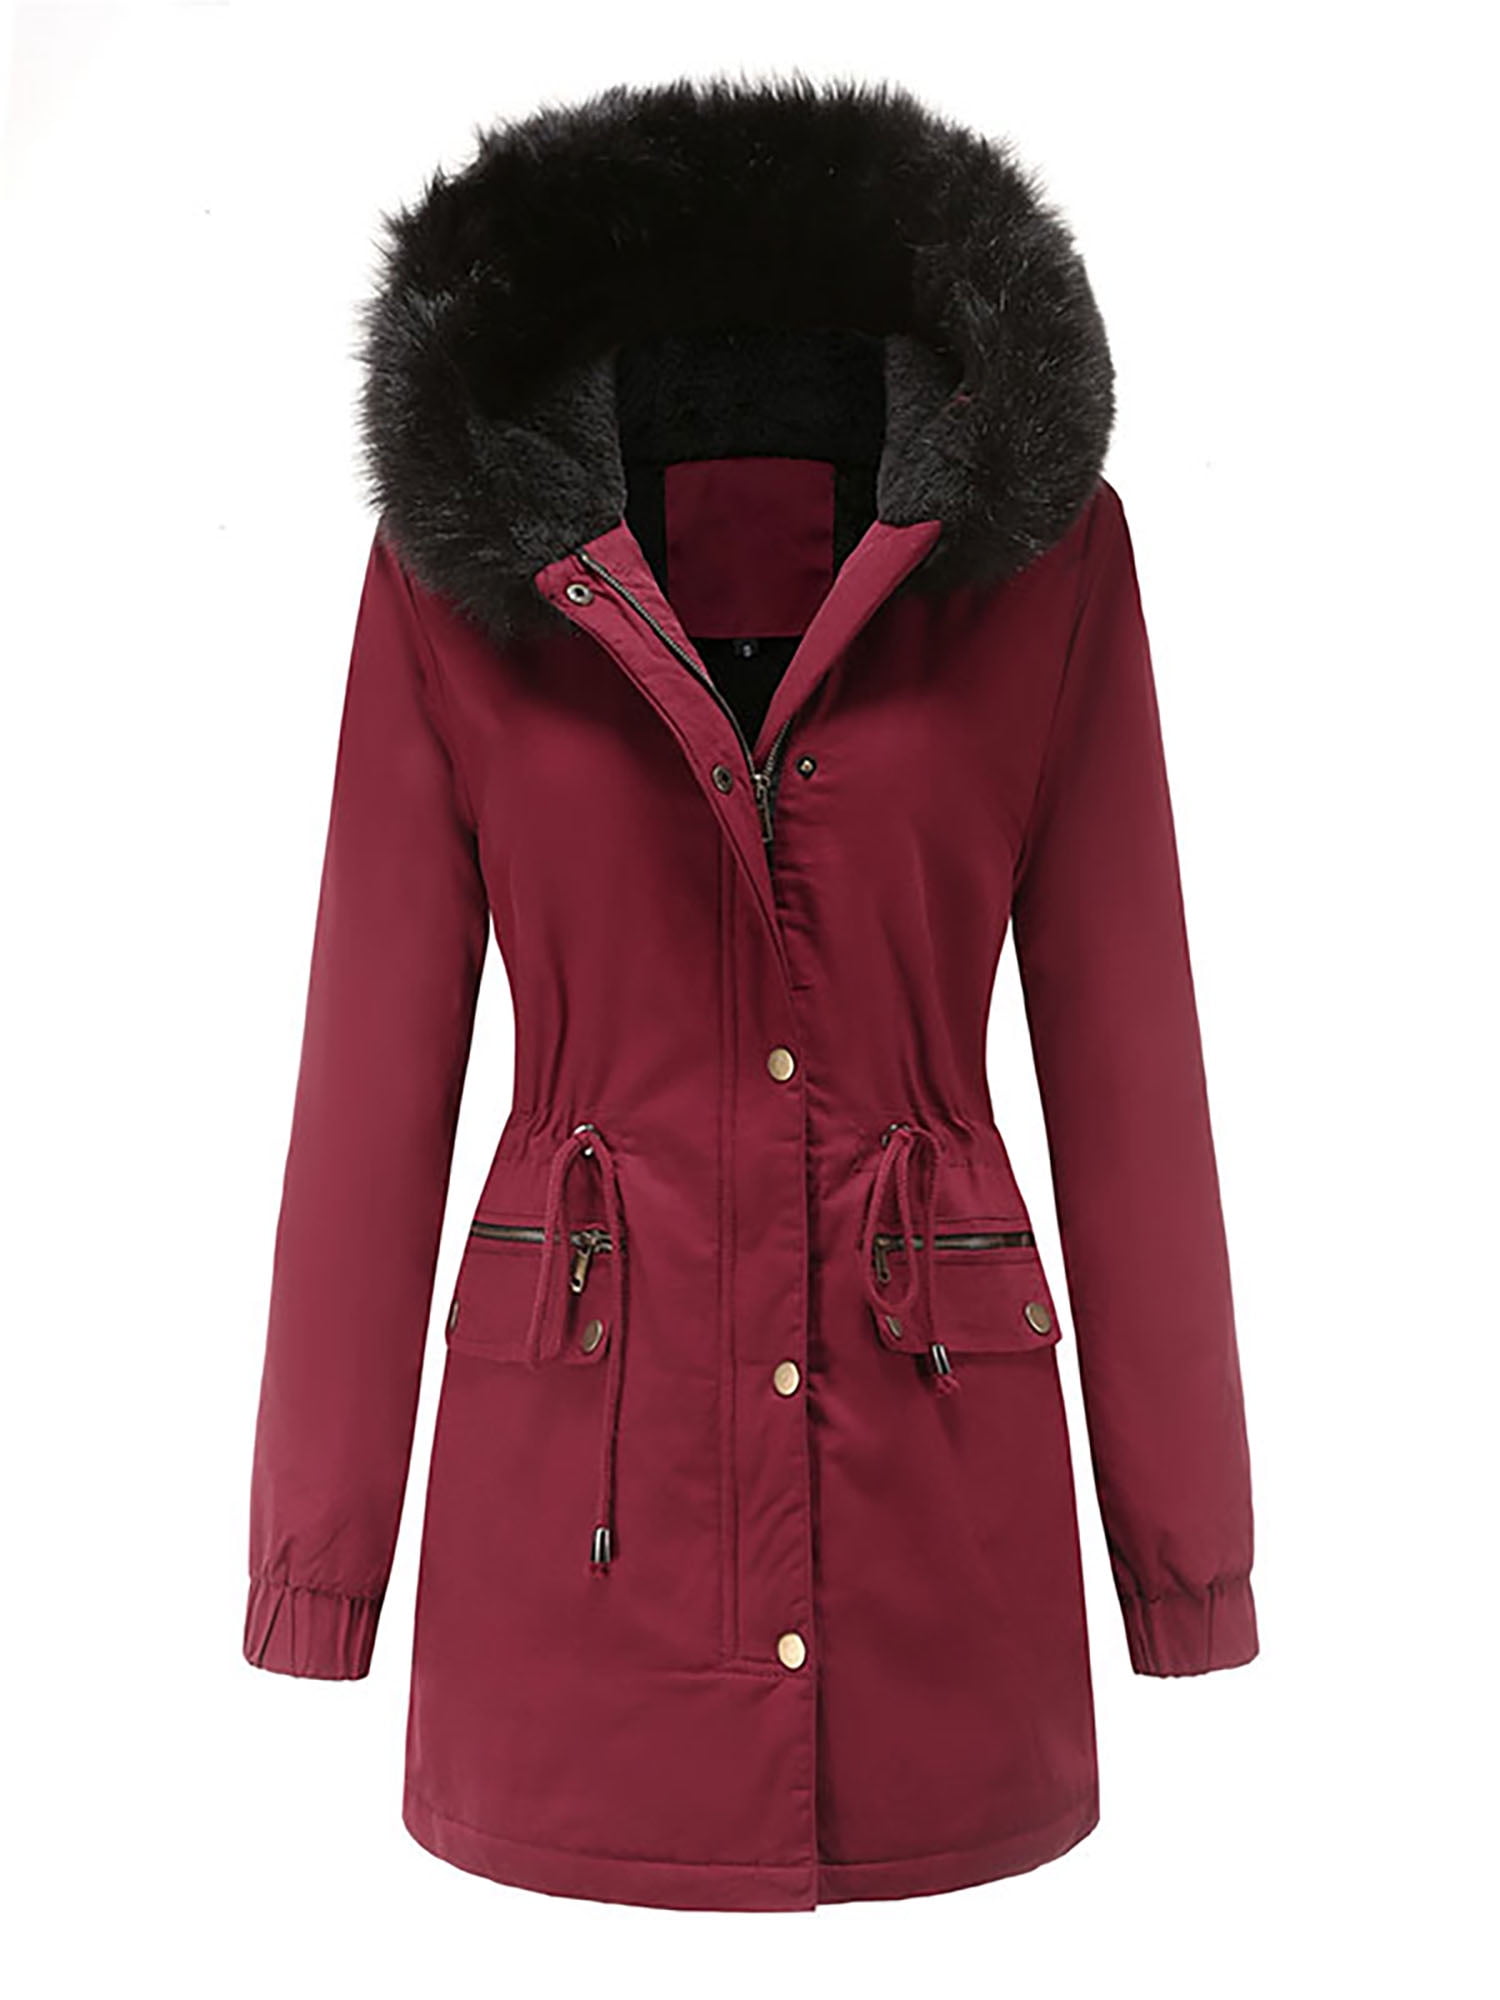 Plus Size Women Thicken Fleece Fur Warm Winter Coat Hooded Parka Jacket/Outwear